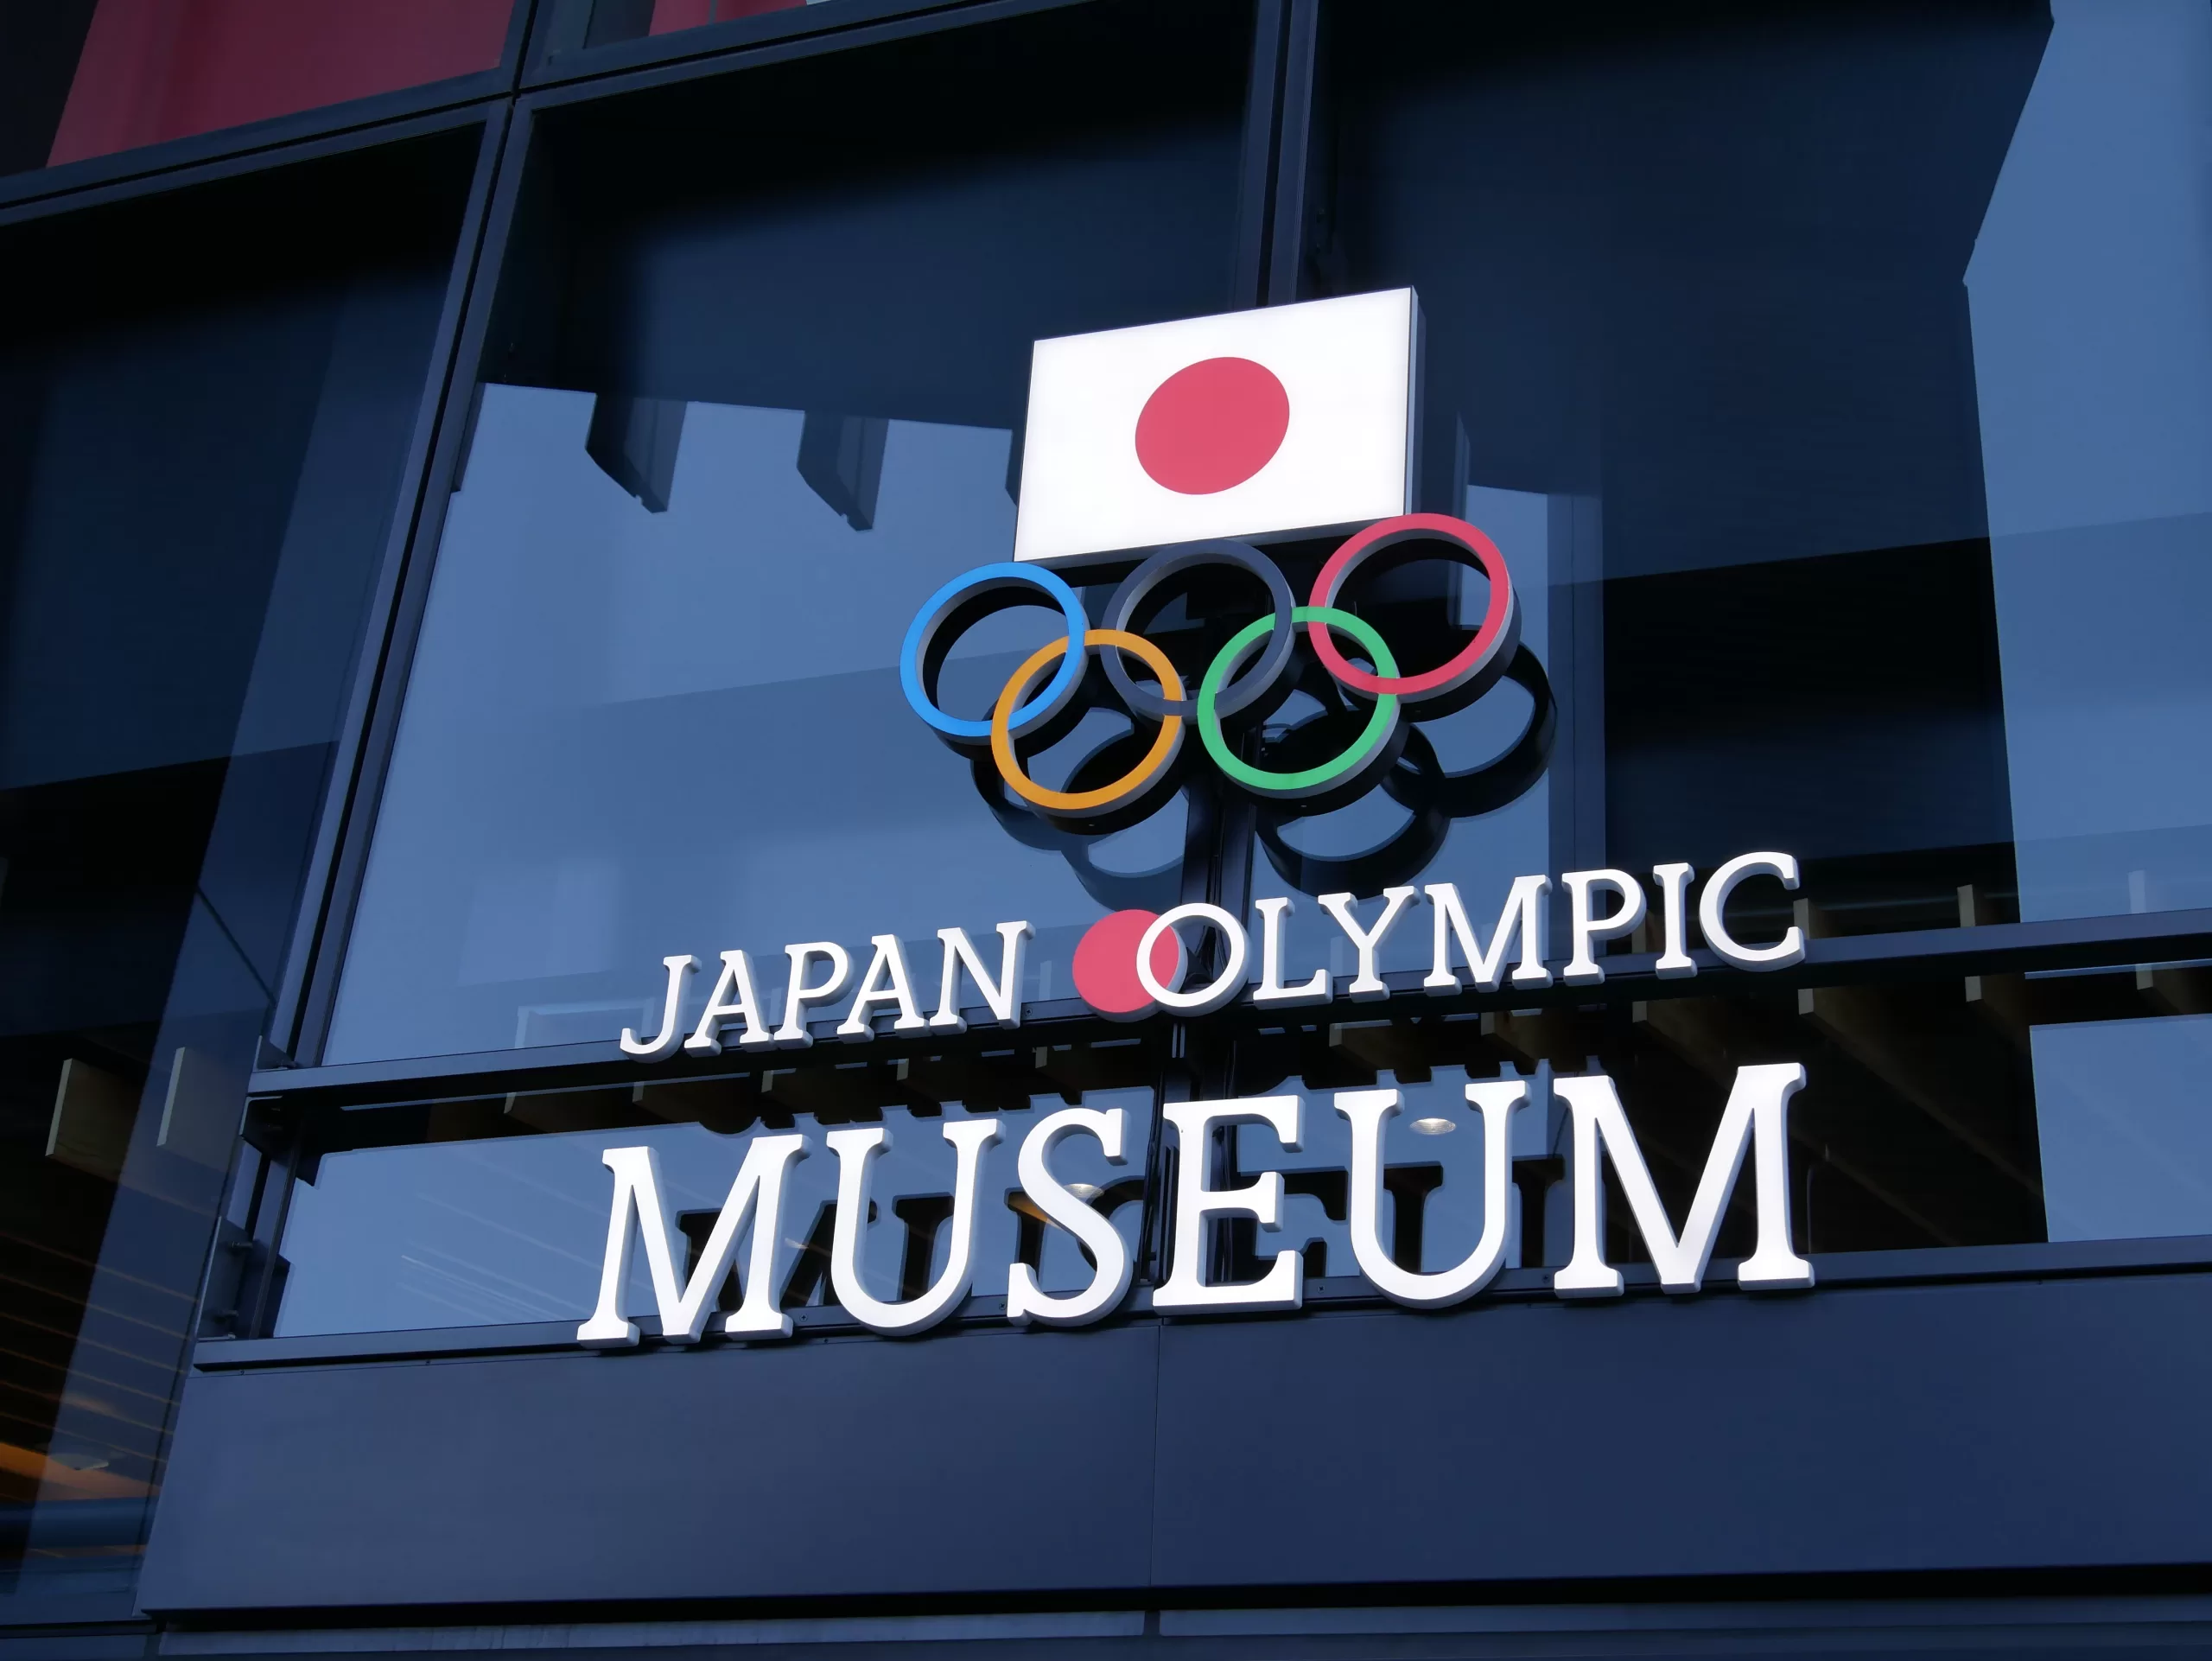 Olympijské muzeum v Tokiu - Cestování po Japonsku - Petr Sycha